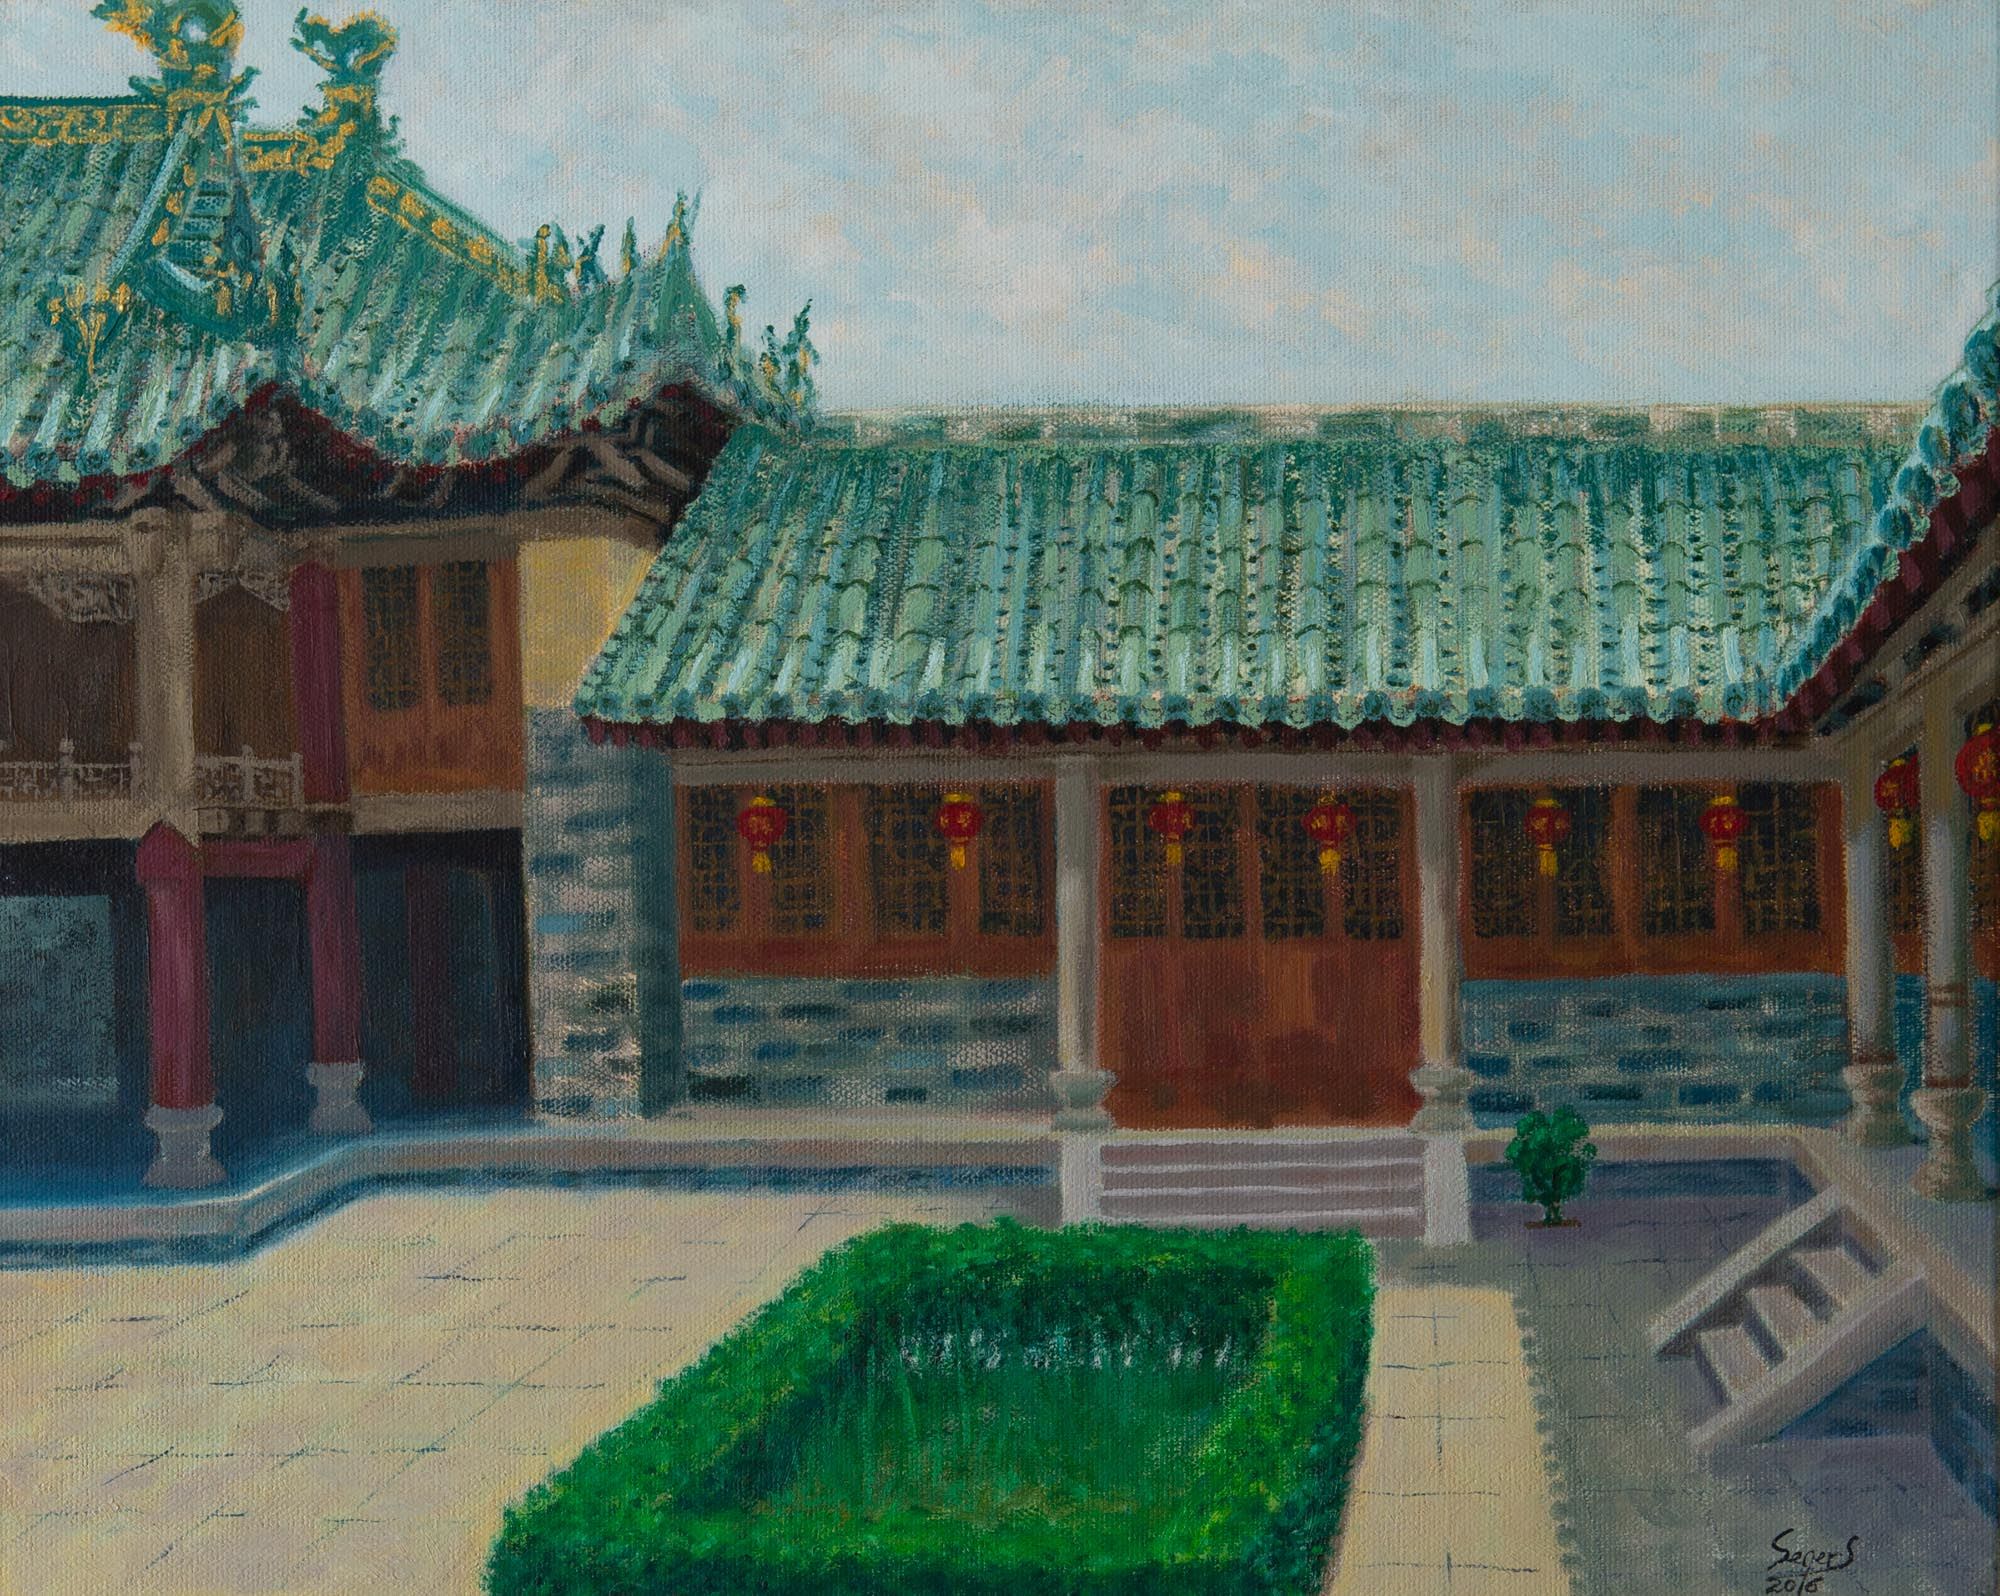 Museum in Luoyang